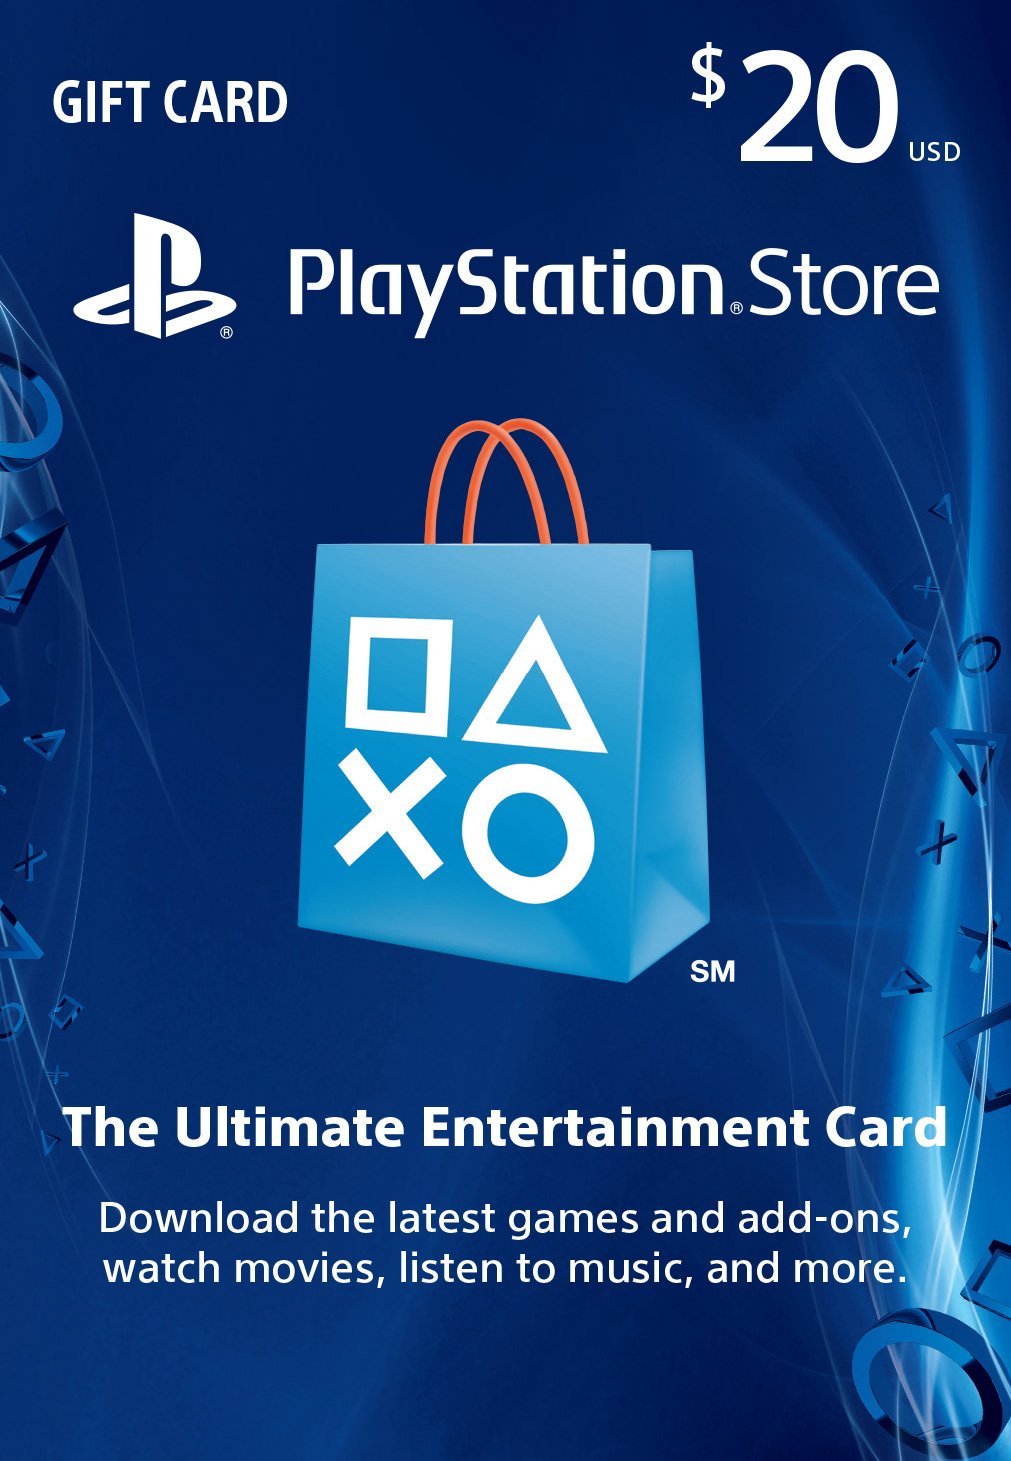 PSN Store Gift Card $20 - PS3/ PS4/ PS Vita (CODE)